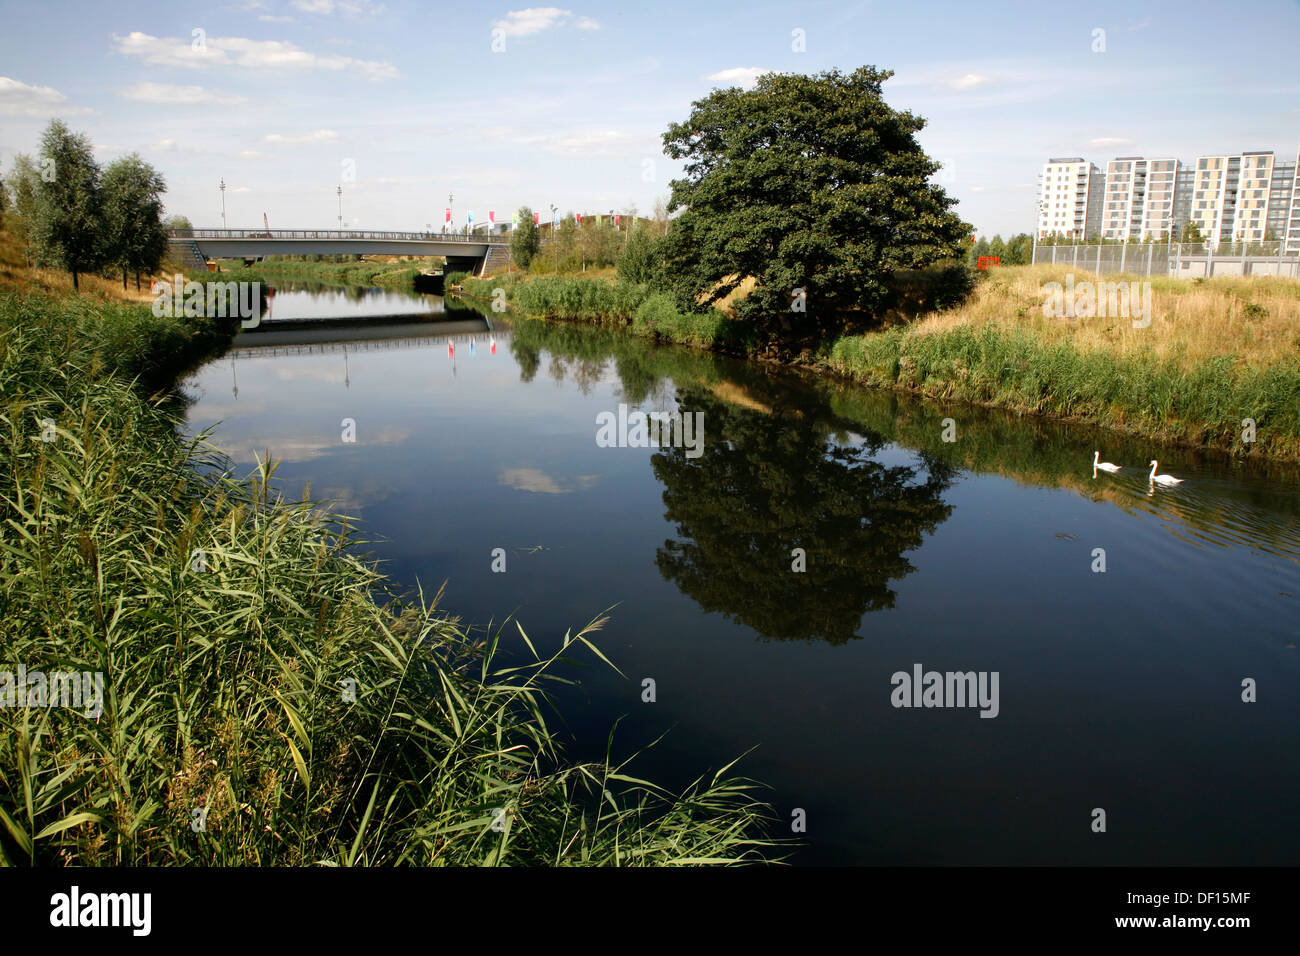 Río Lea ejecutando a través de Queen Elizabeth Olympic Park, Stratford, London, UK Foto de stock